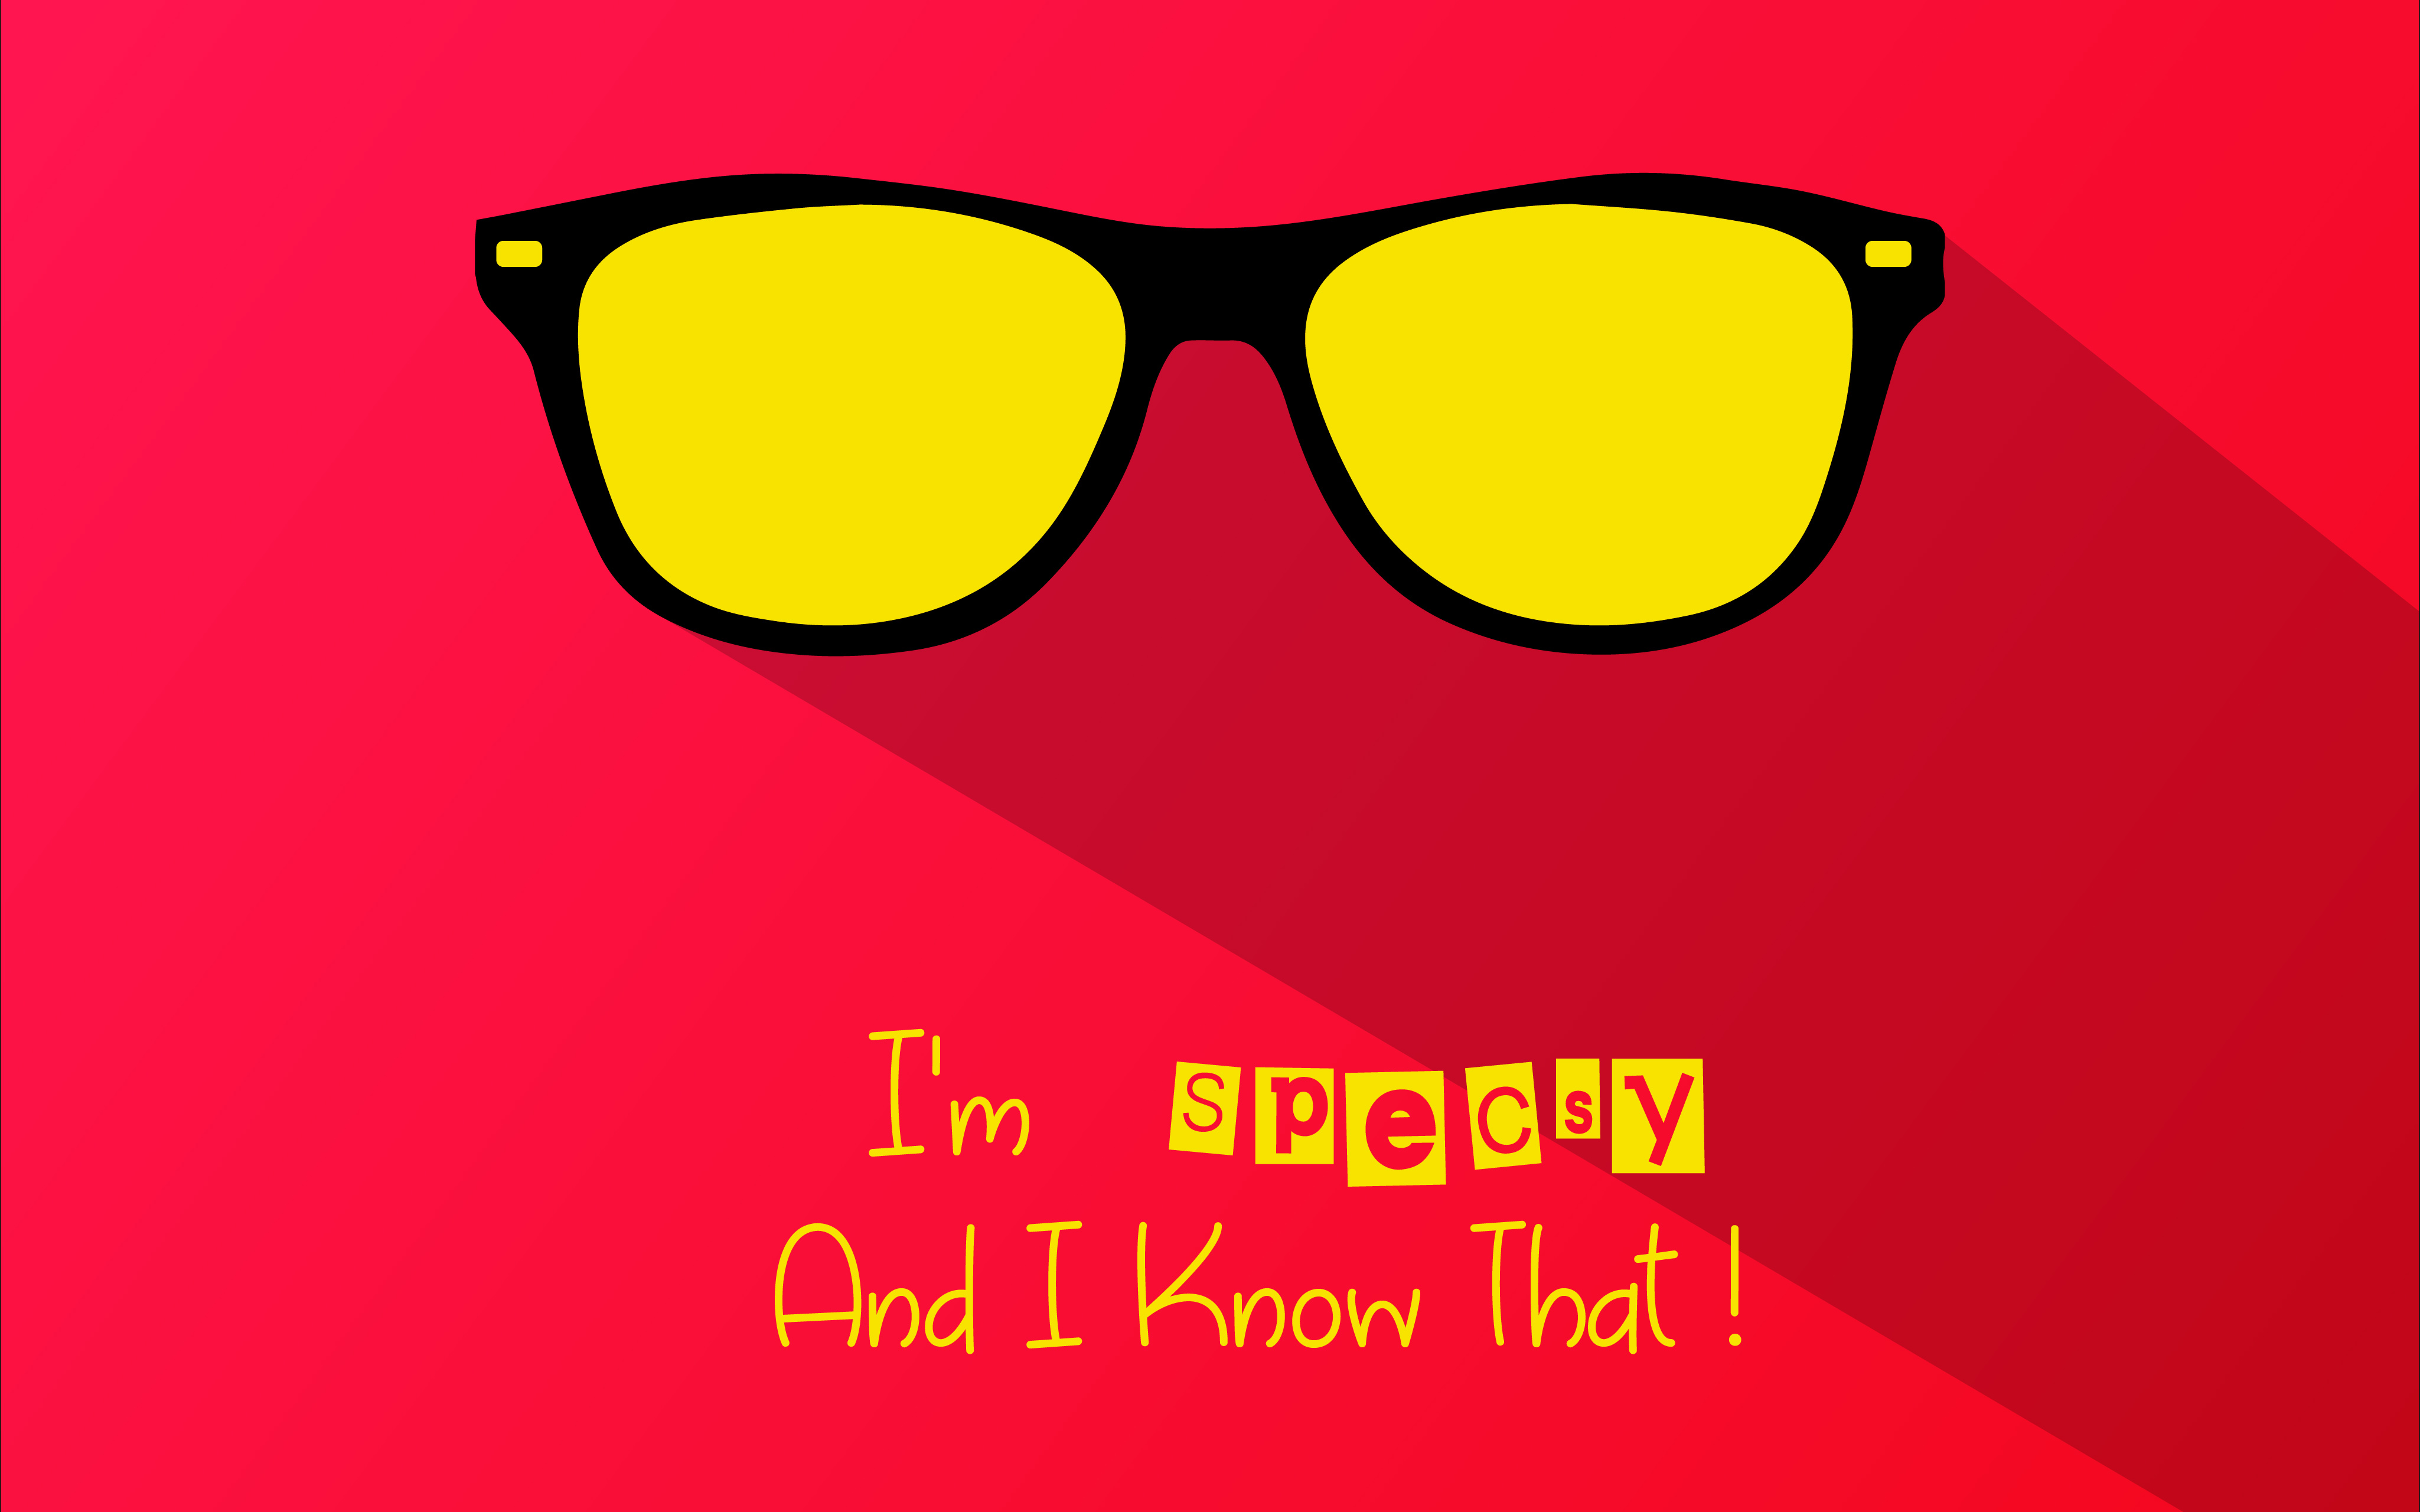 Specsy K